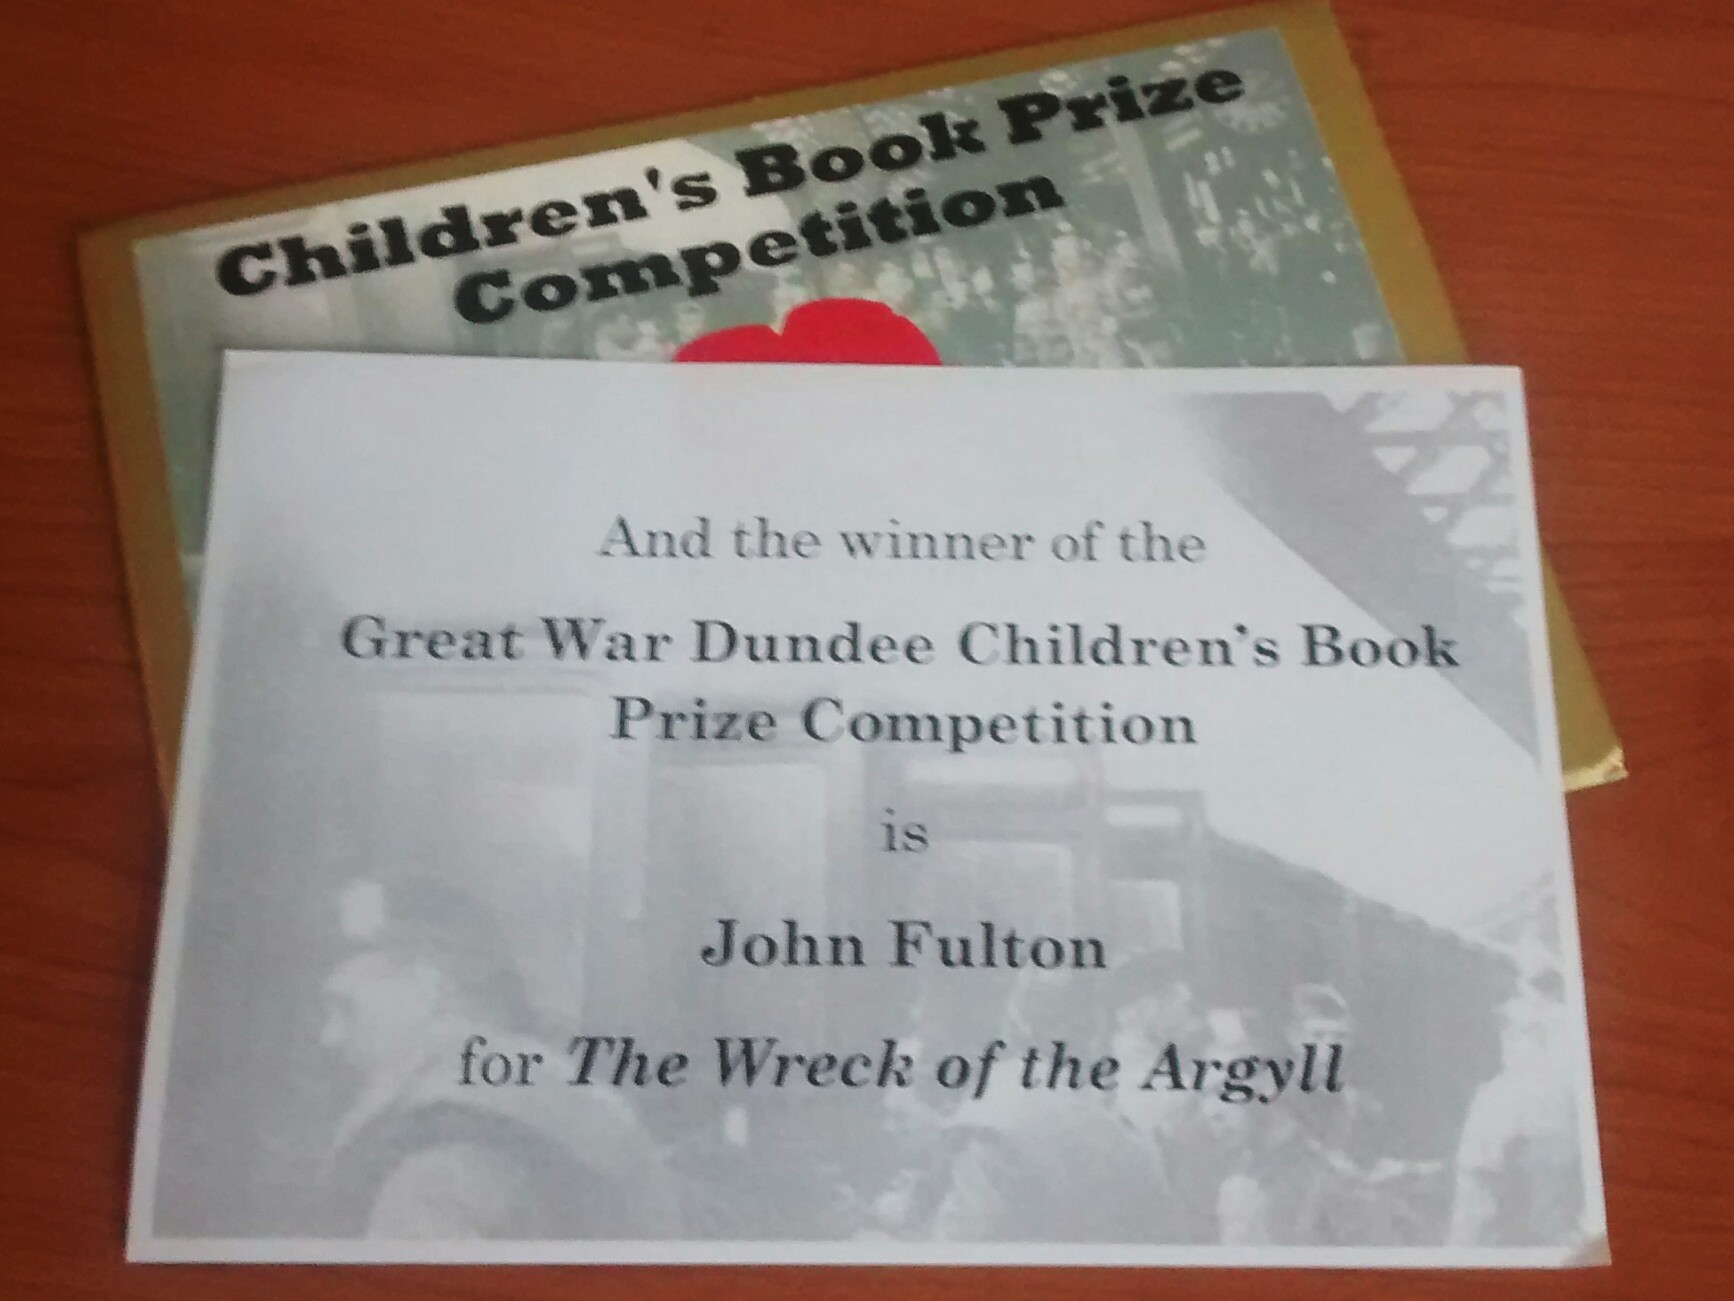 Great War Dundee winner